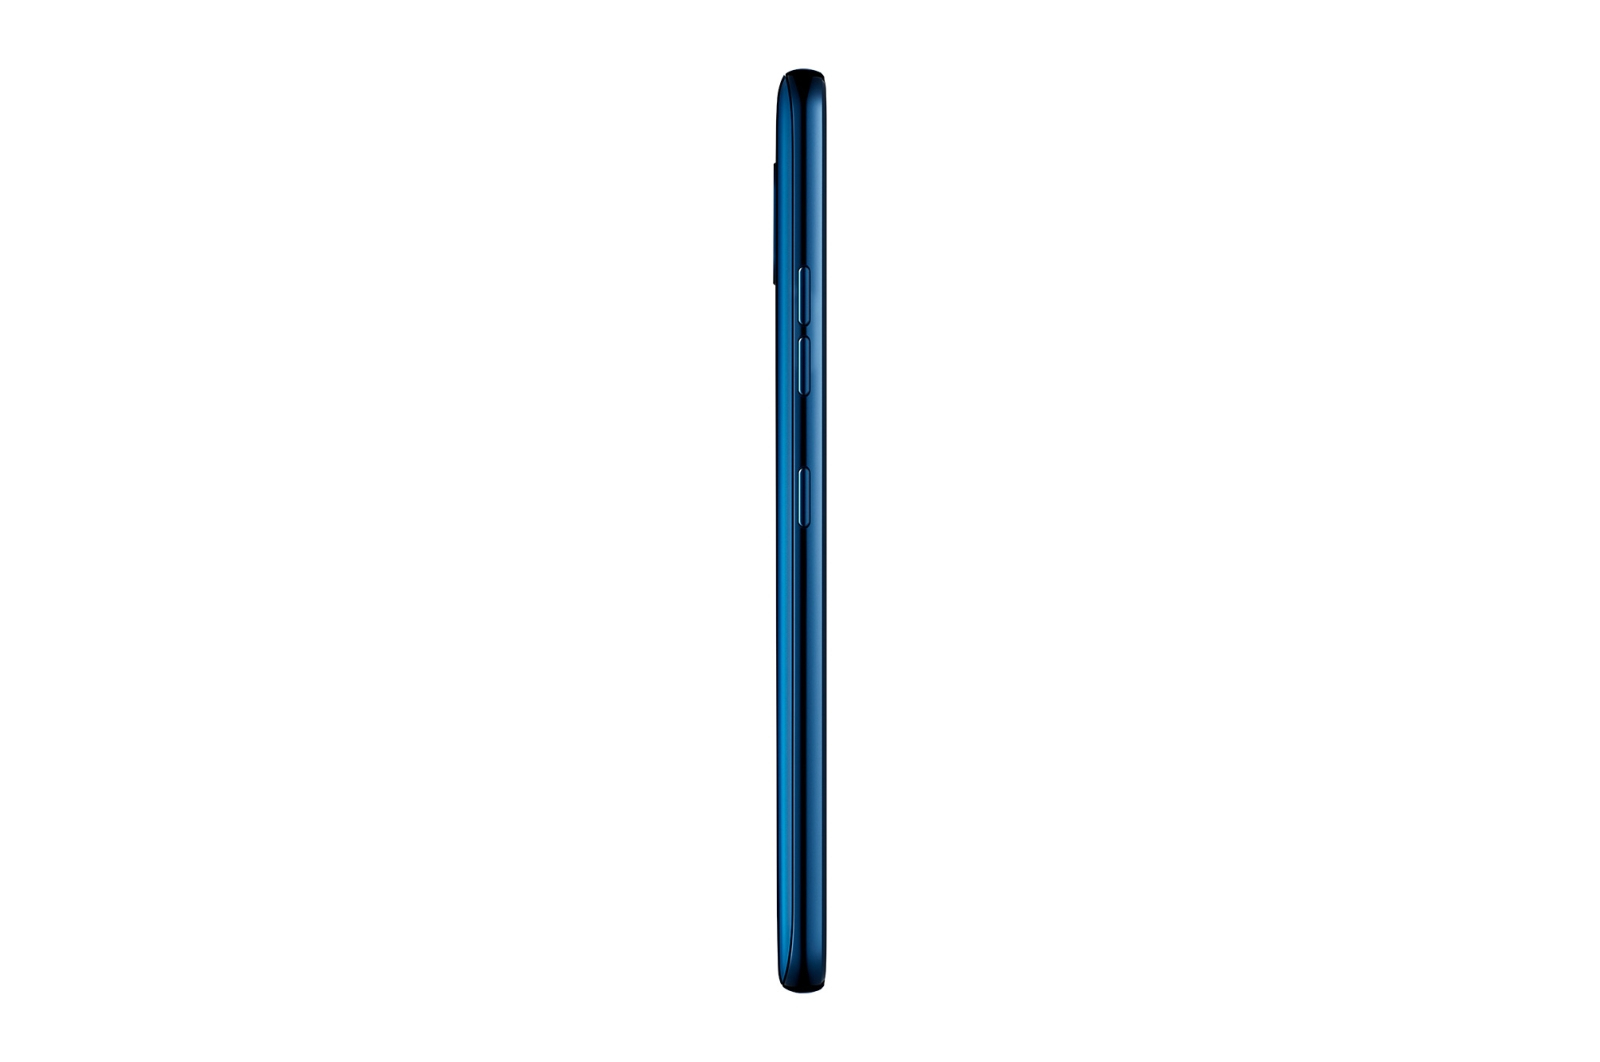 Specs Lg G7 Thinq Lmg710em 15 5 Cm 6 1 Single Sim Android 8 0 4g Usb Type C 4 Gb 64 Gb 3000 Mah Blue Smartphones Lmg710em Aneubl